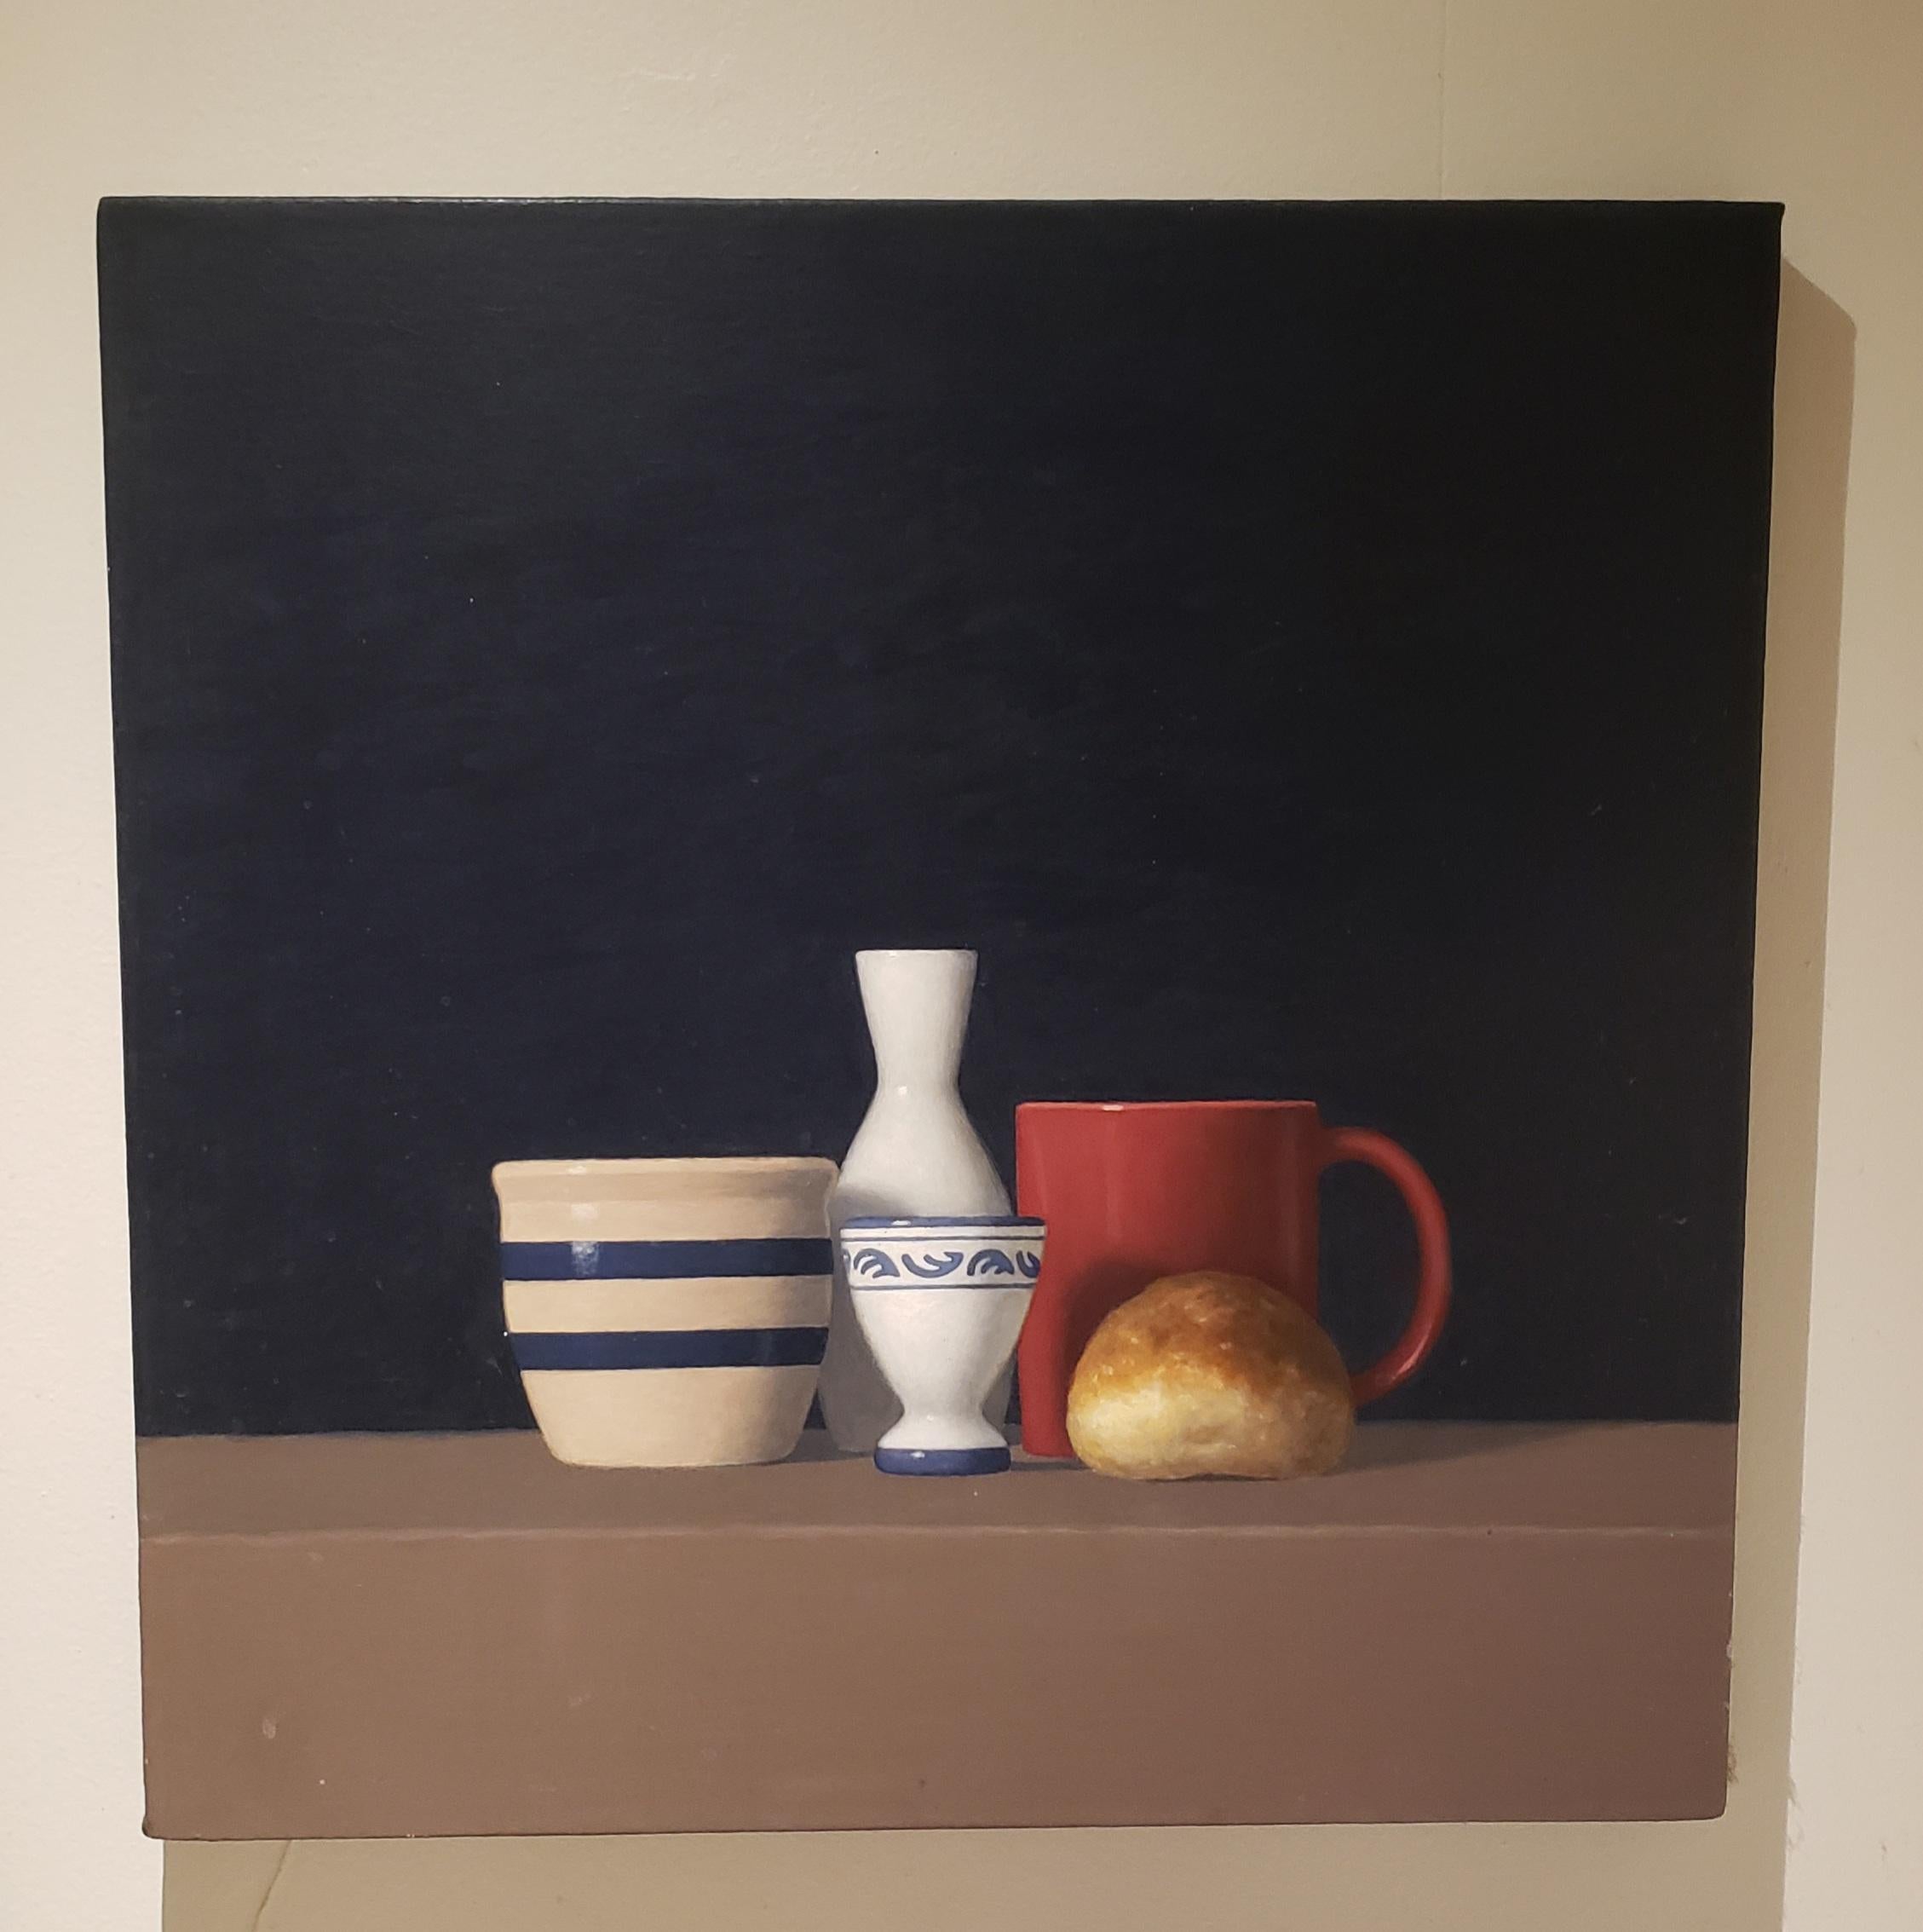 Roll with Four Objects, peinture à l'huile, réalisme, 24 x 24, livraison gratuite, réaliste - Painting de David Harrison